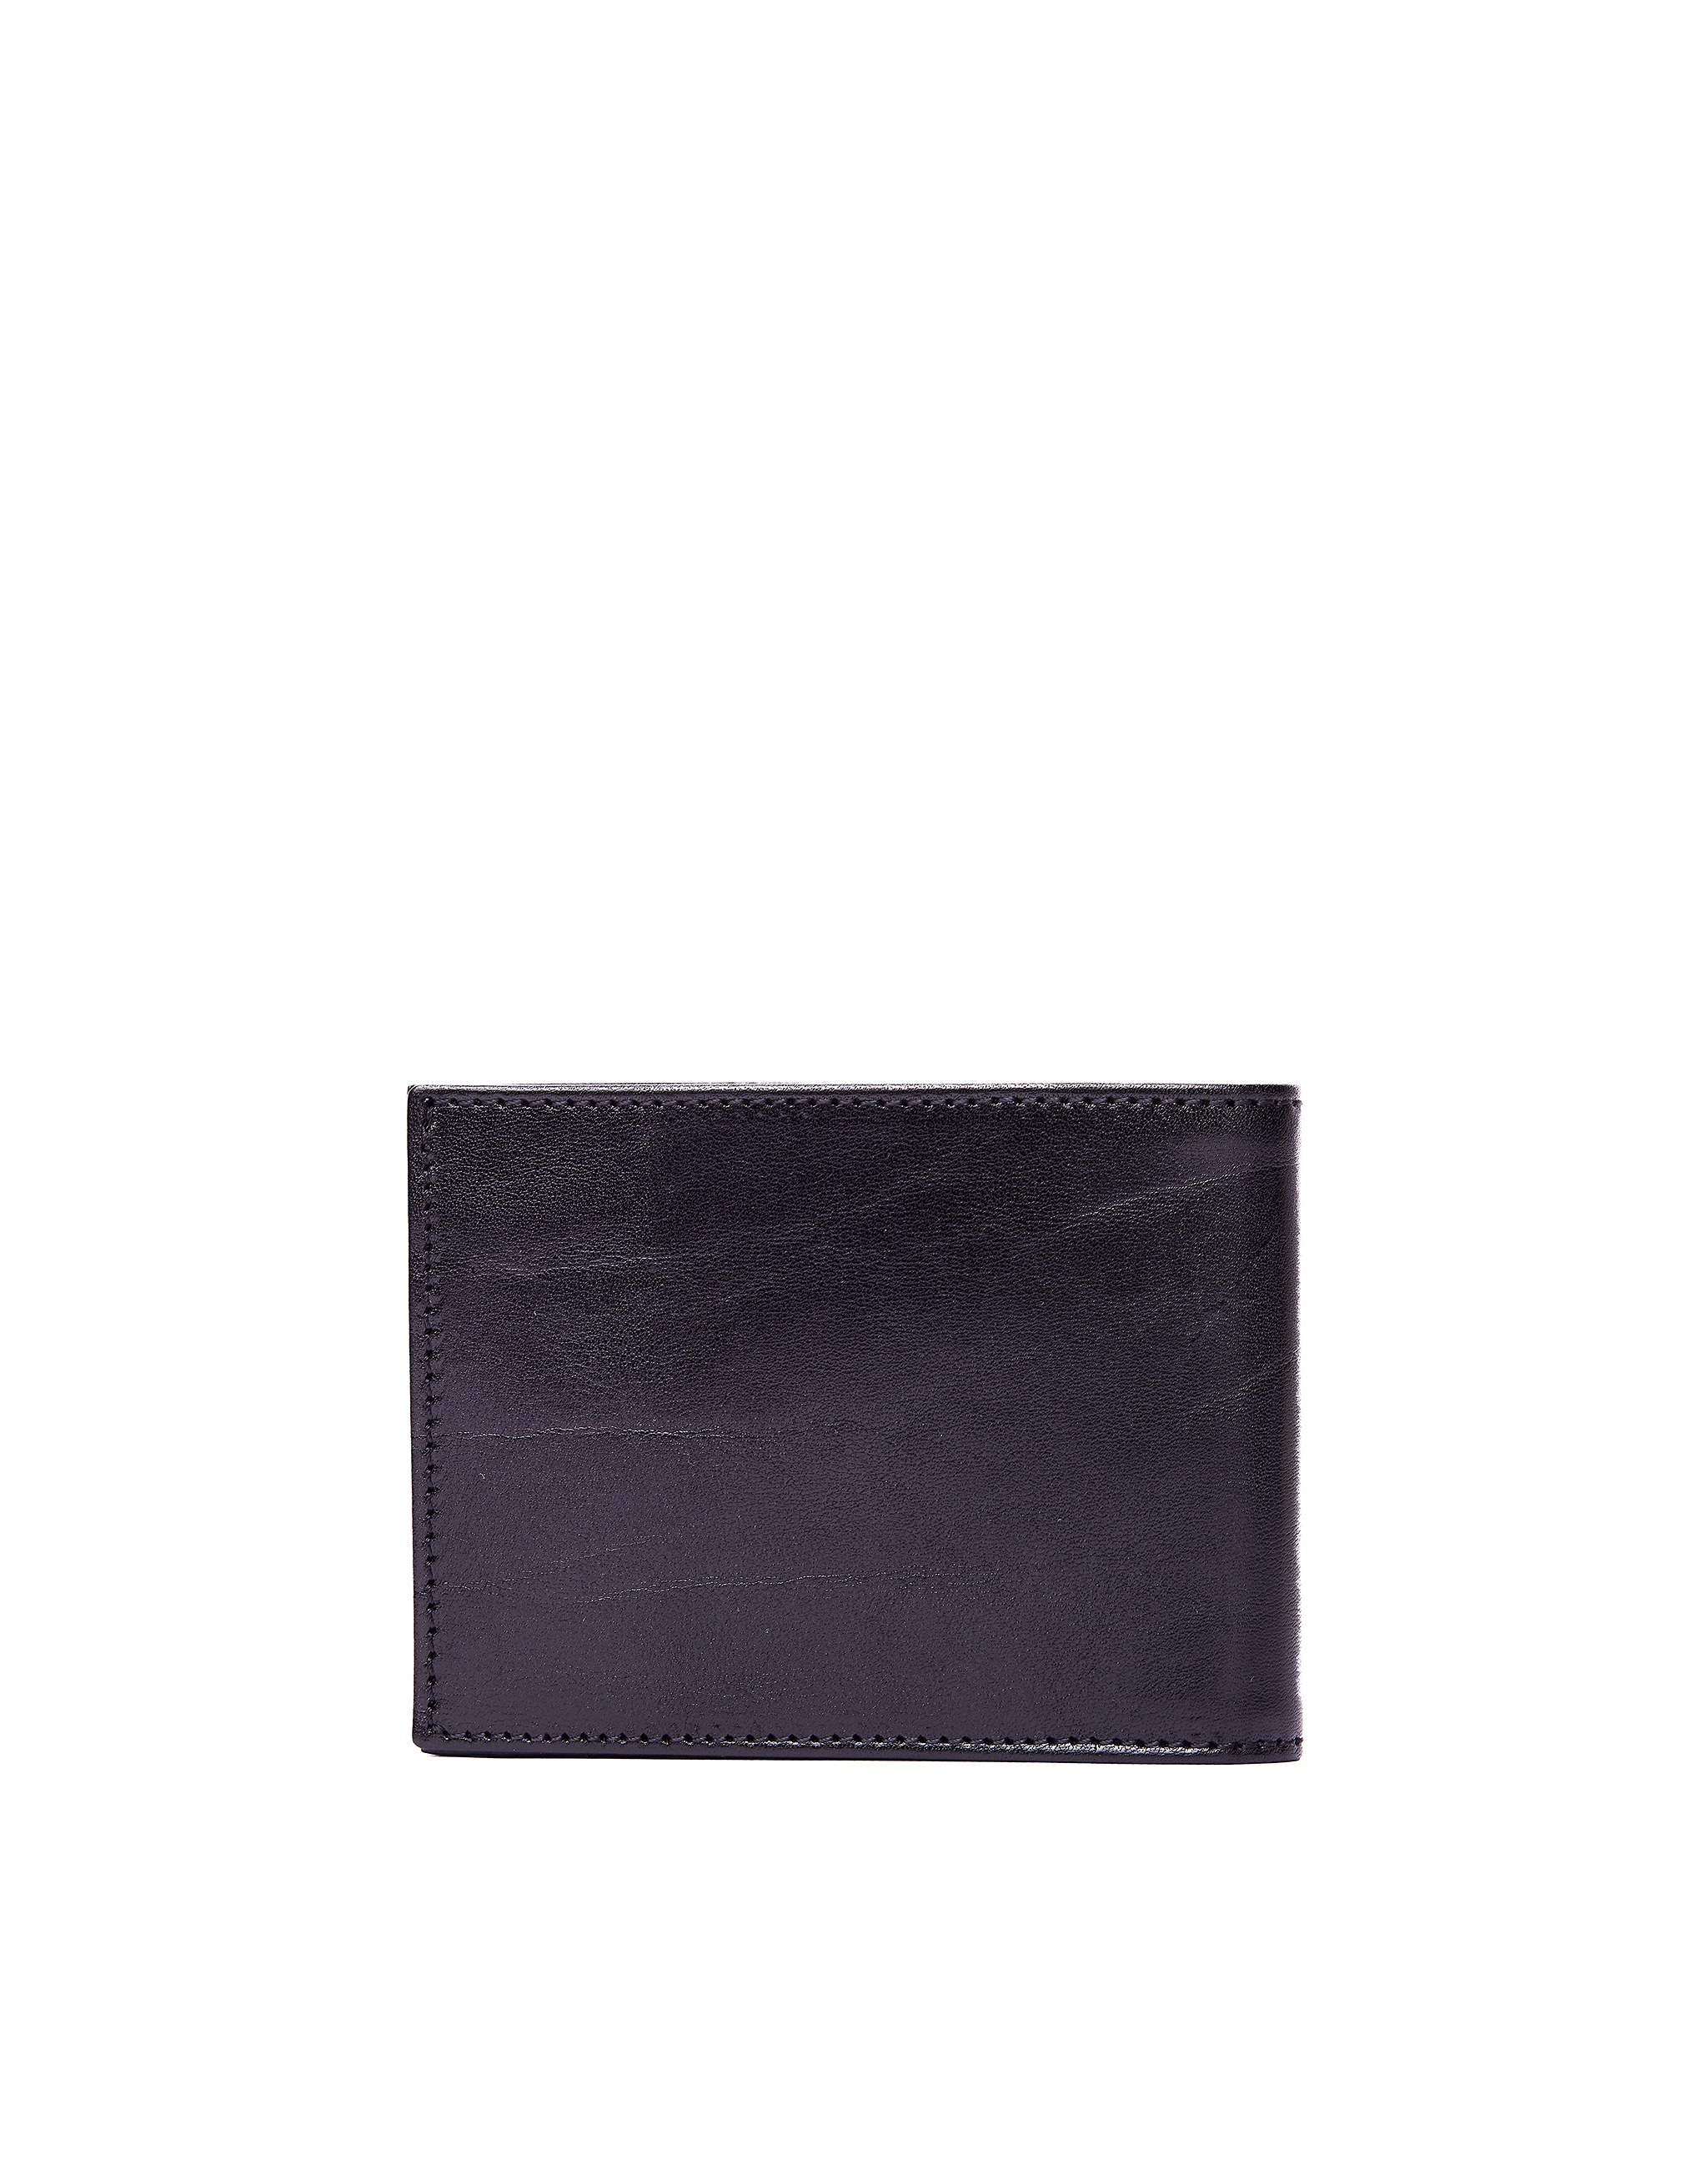 Черный кожаный кошелек Pocket Ugo Cacciatori WL141/VGN, размер One Size WL141/VGN - фото 3